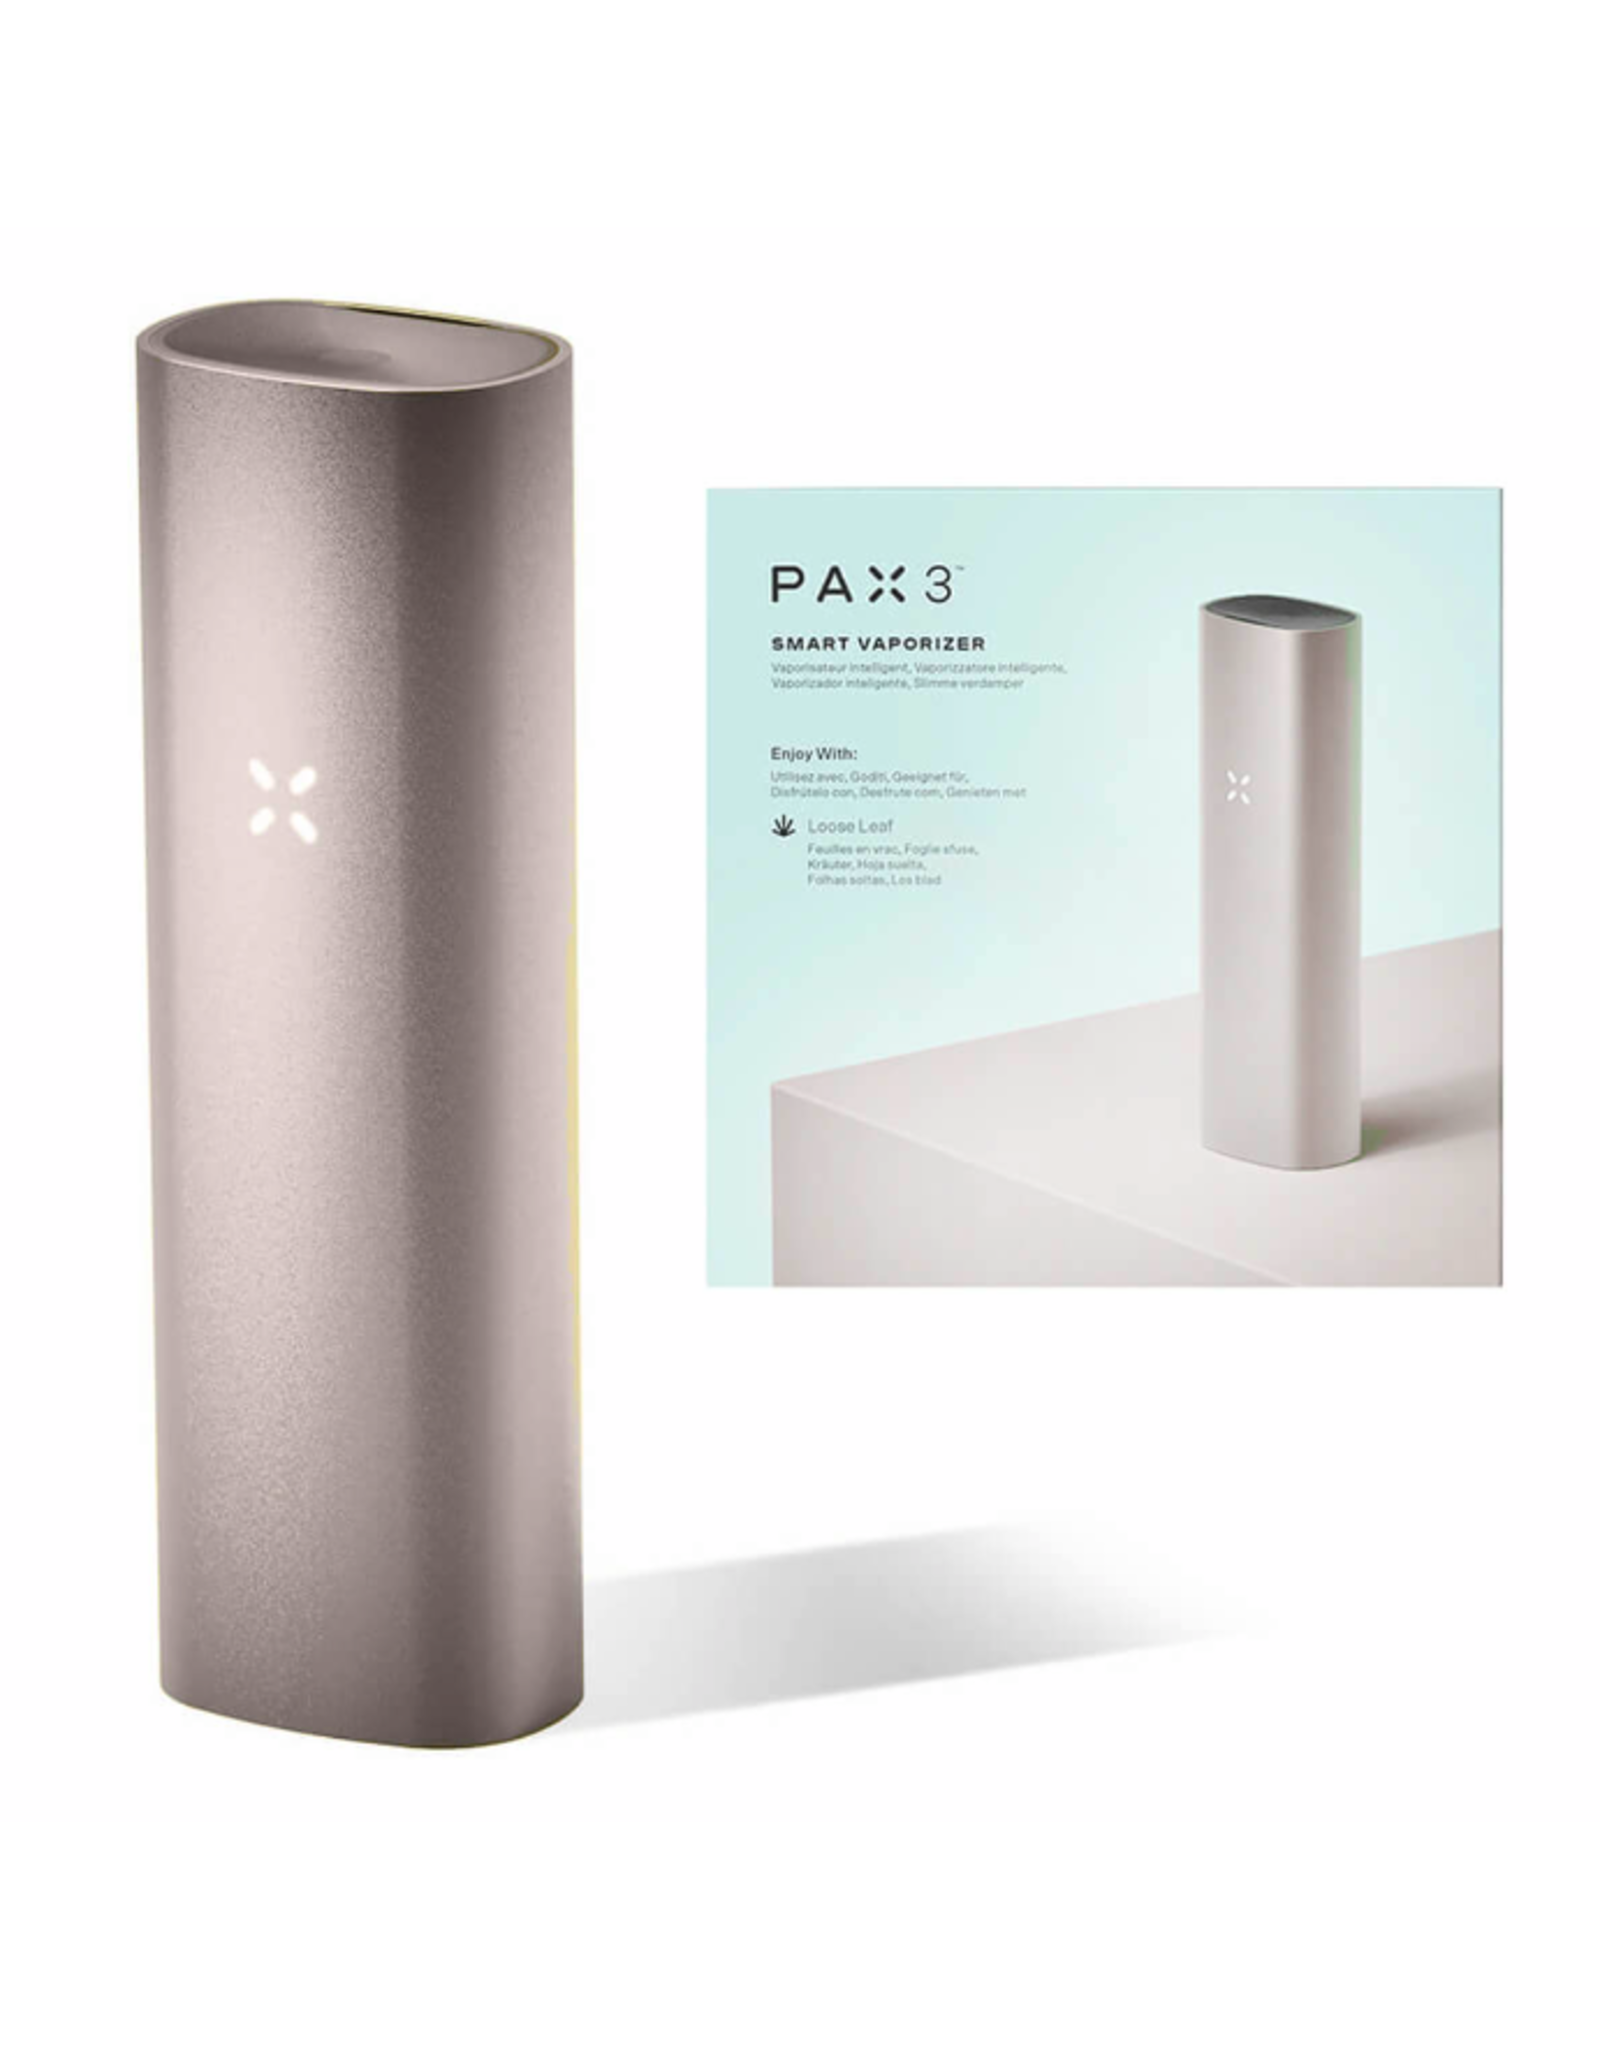 PAX PAX 3 smart vaporizer